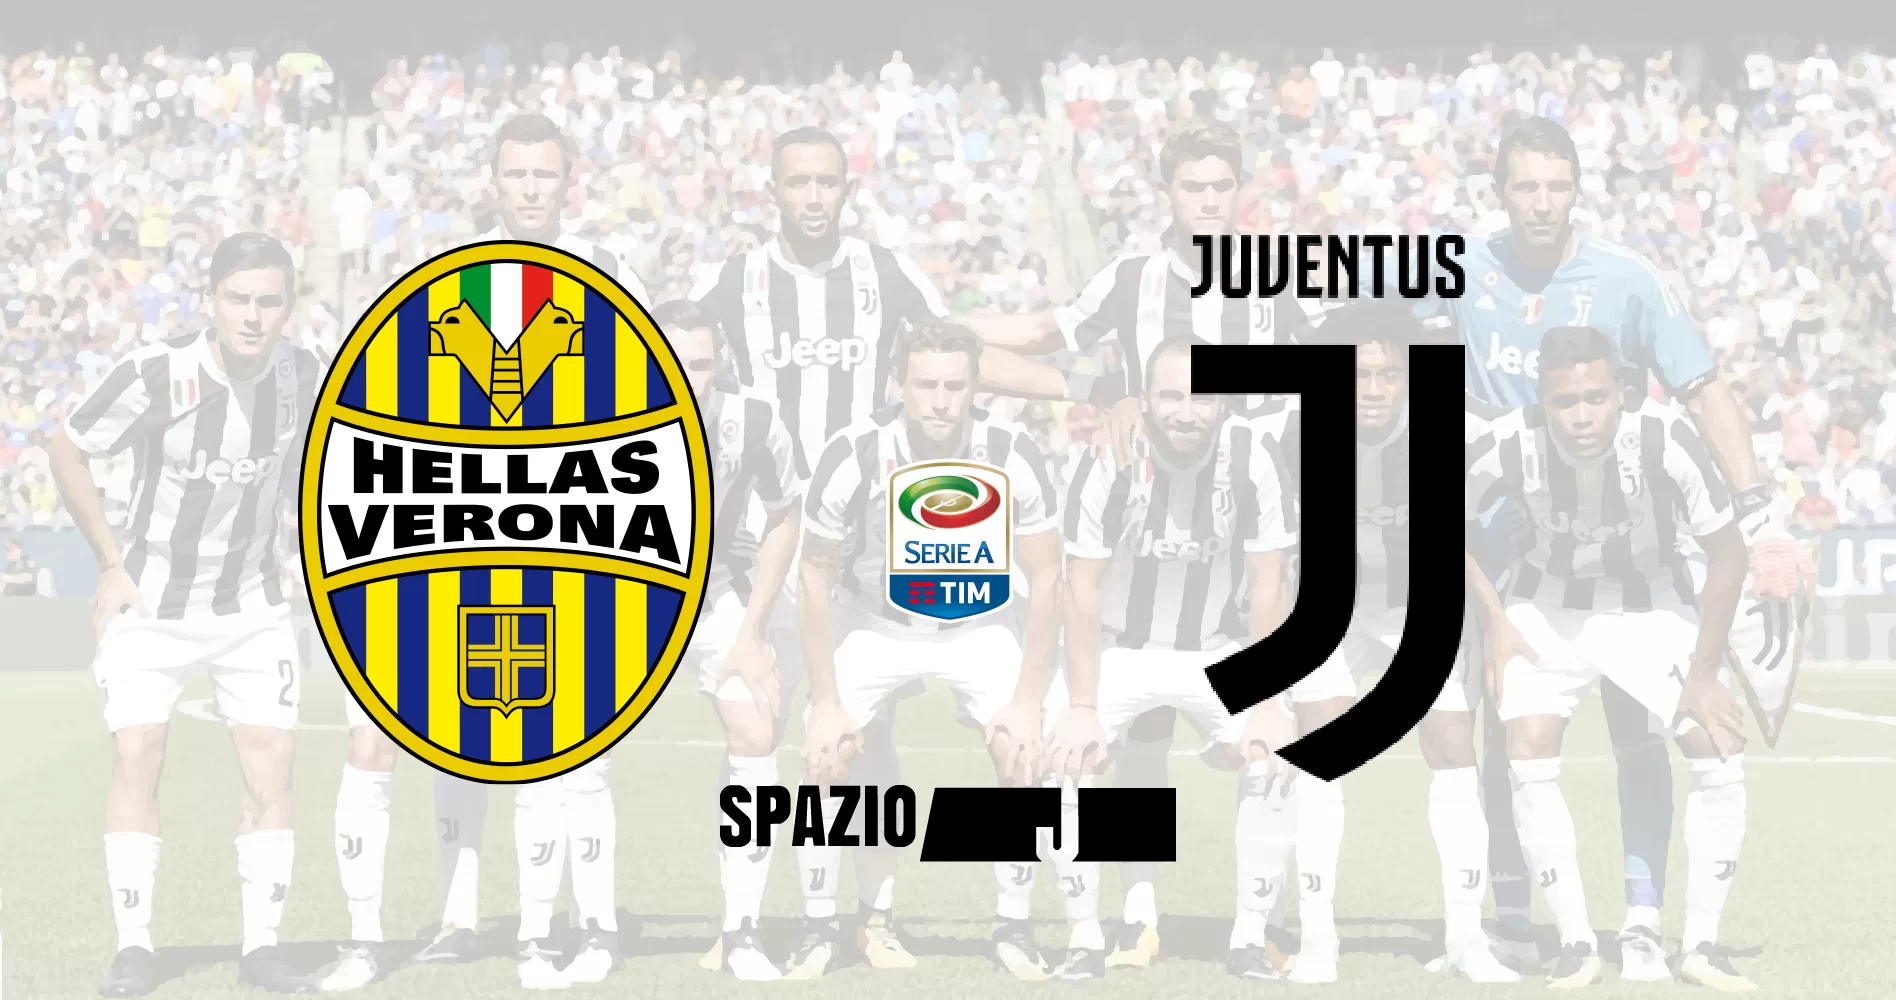 ReLive Verona-Juventus 1-3, Matuidi e Dybala regalano i 3 punti ai bianconeri